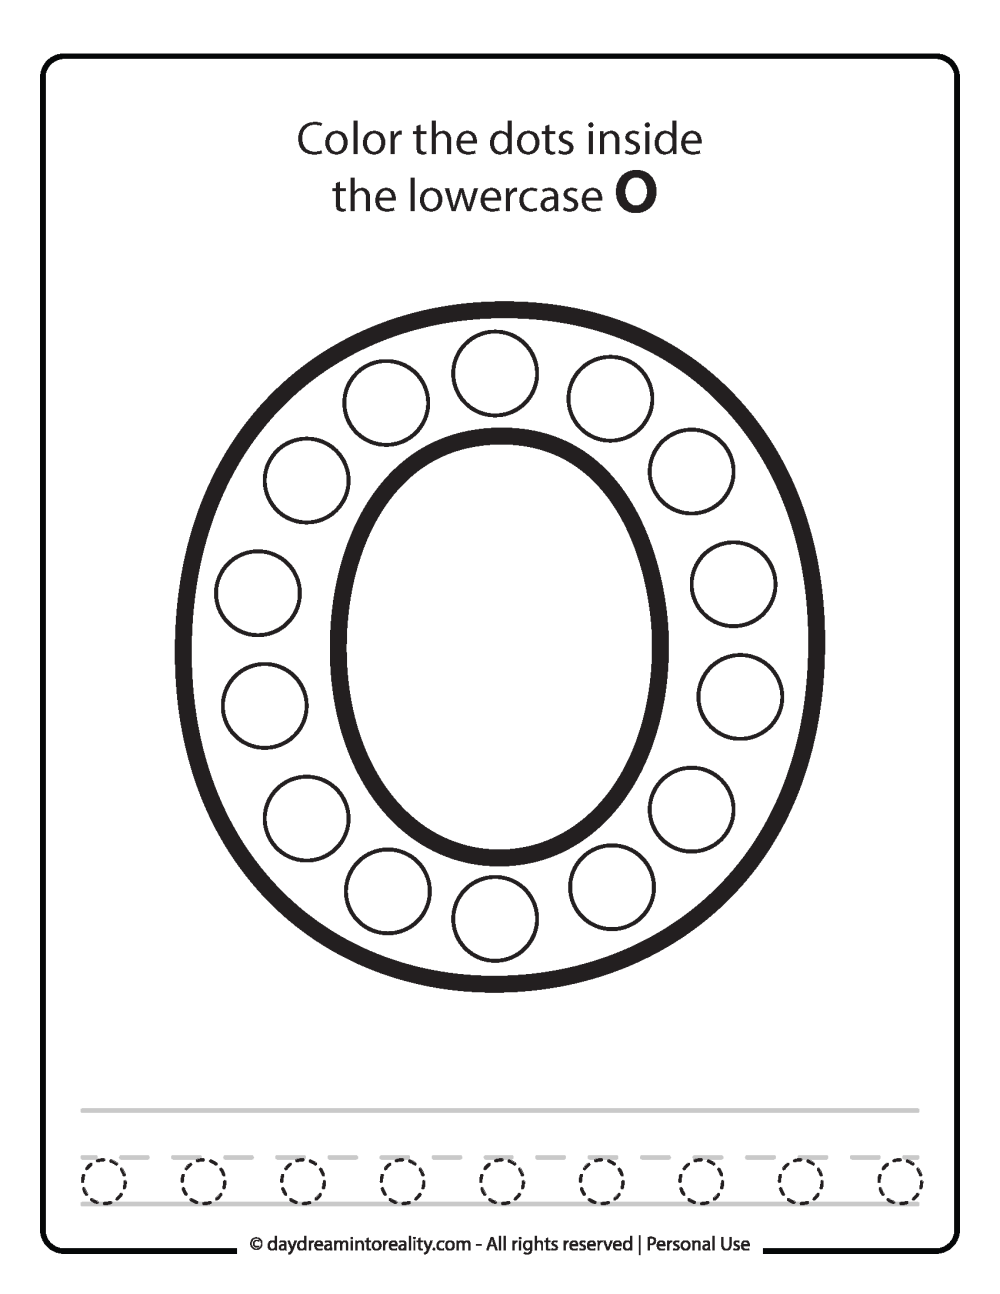 Lowercase "o" Dot Marker Worksheet Free Printable activity for kids (preschool, kindergarten)